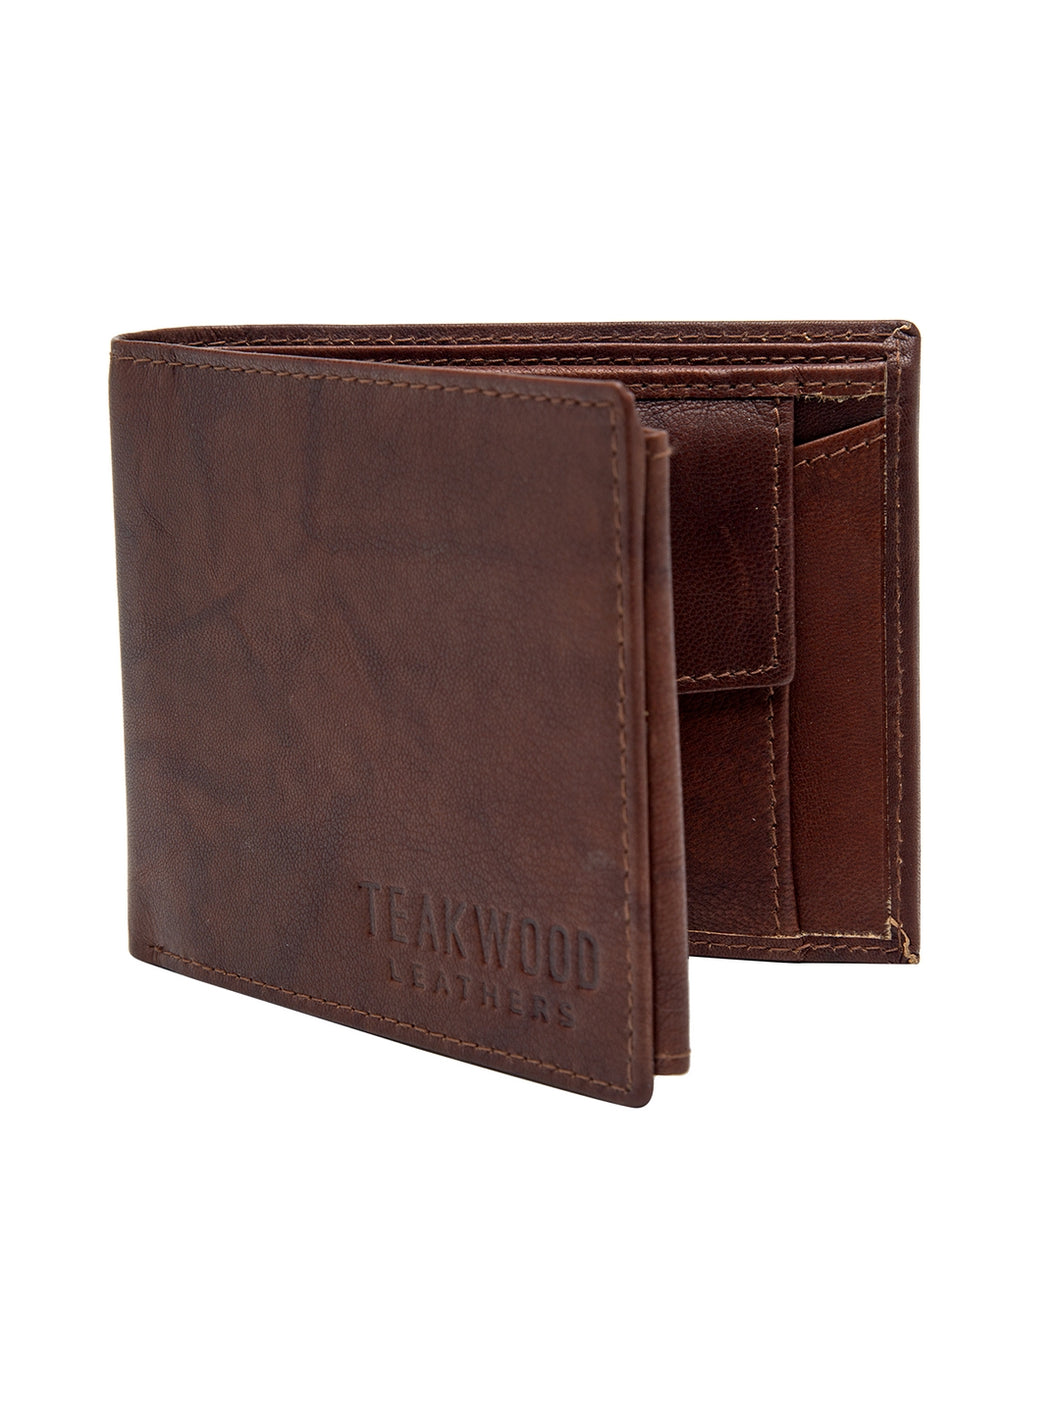 Teakwood Men Genuine Leather Brown Solid Bi fold Wallet